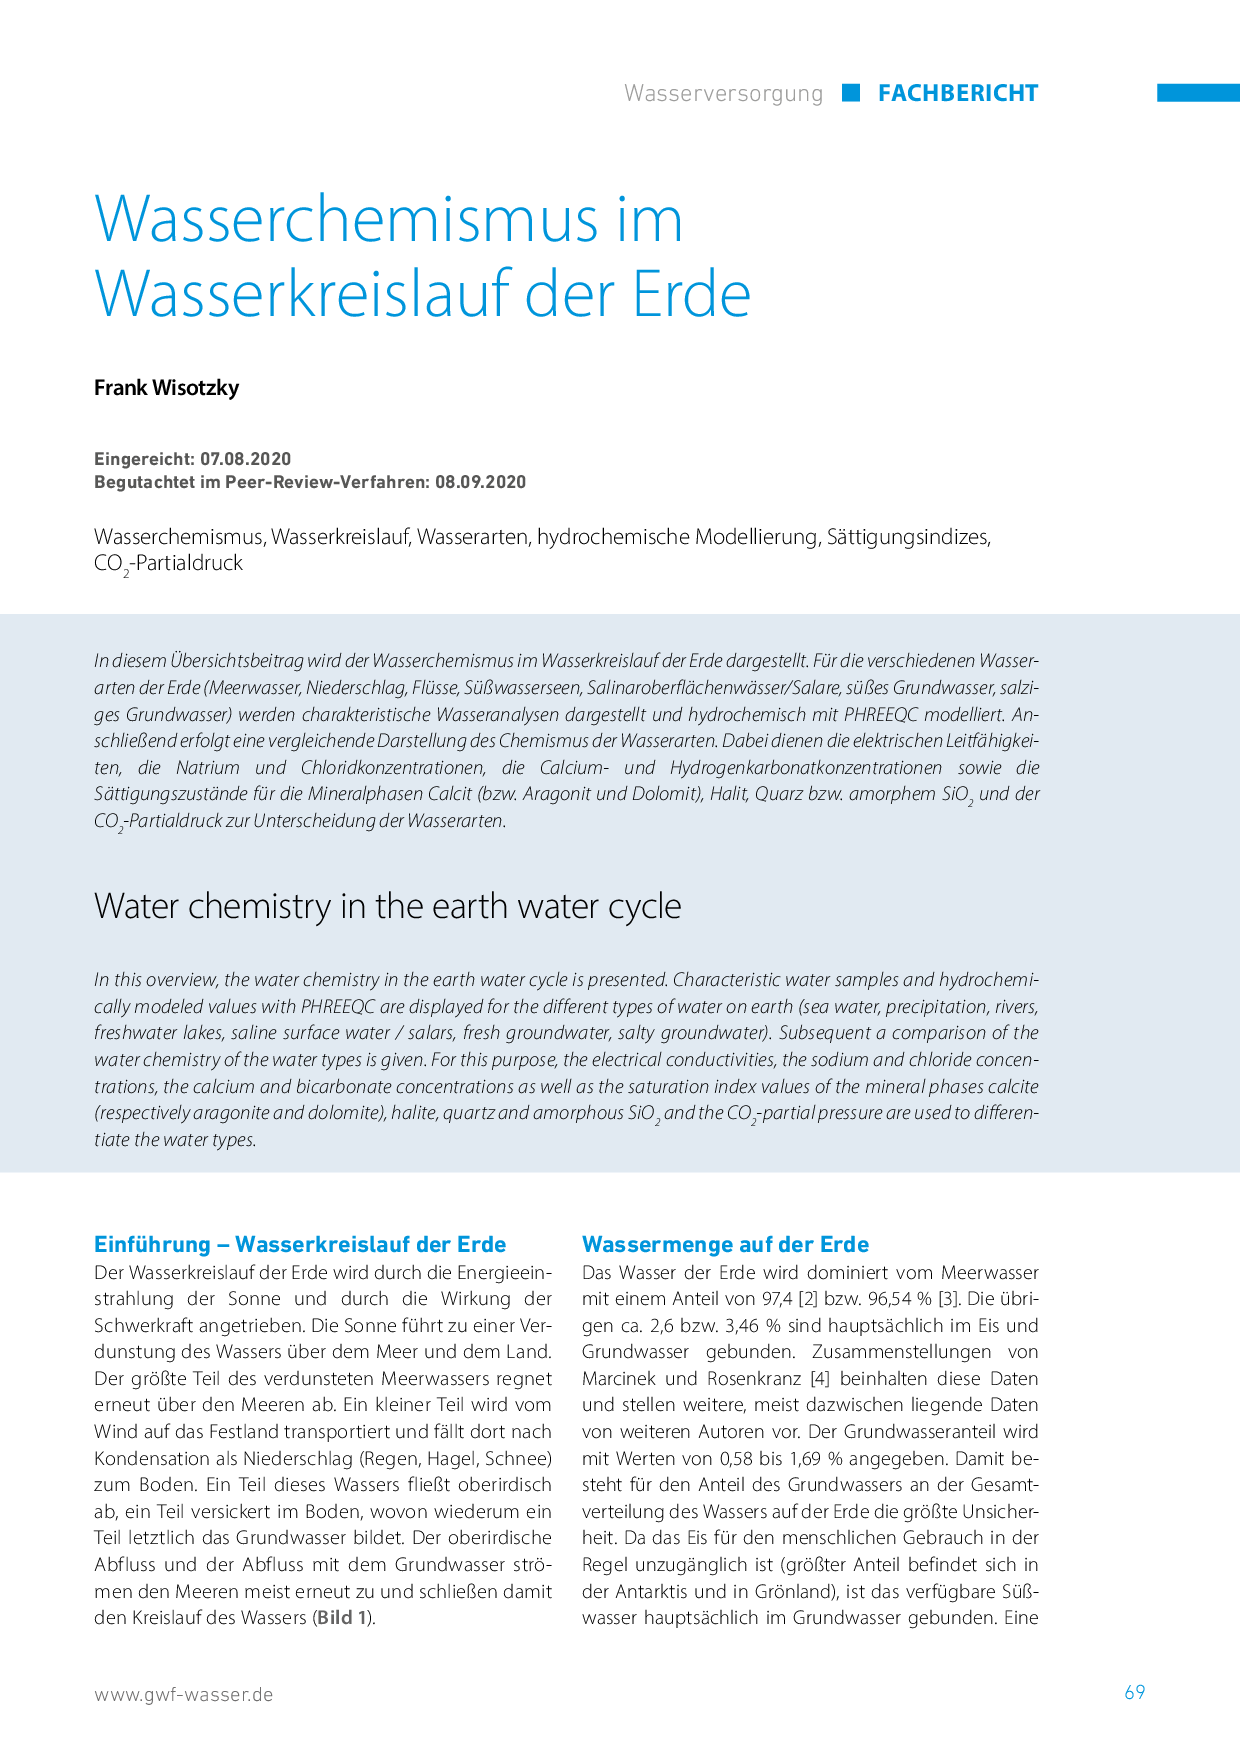 Wasserchemismus im Wasserkreislauf der Erde